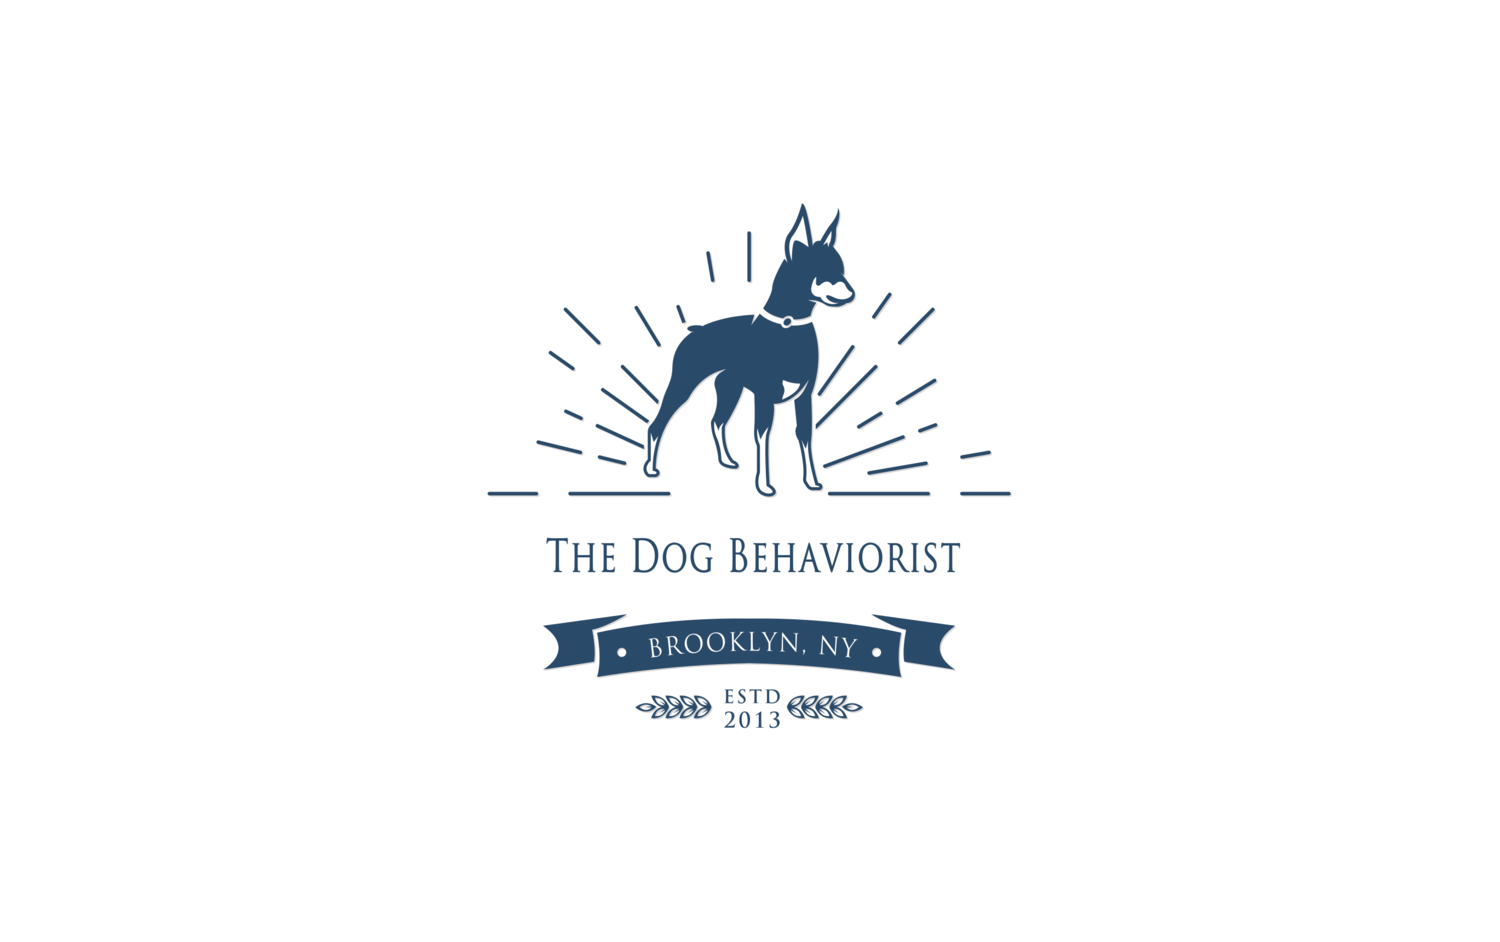 The Dog Behaviorist NYC